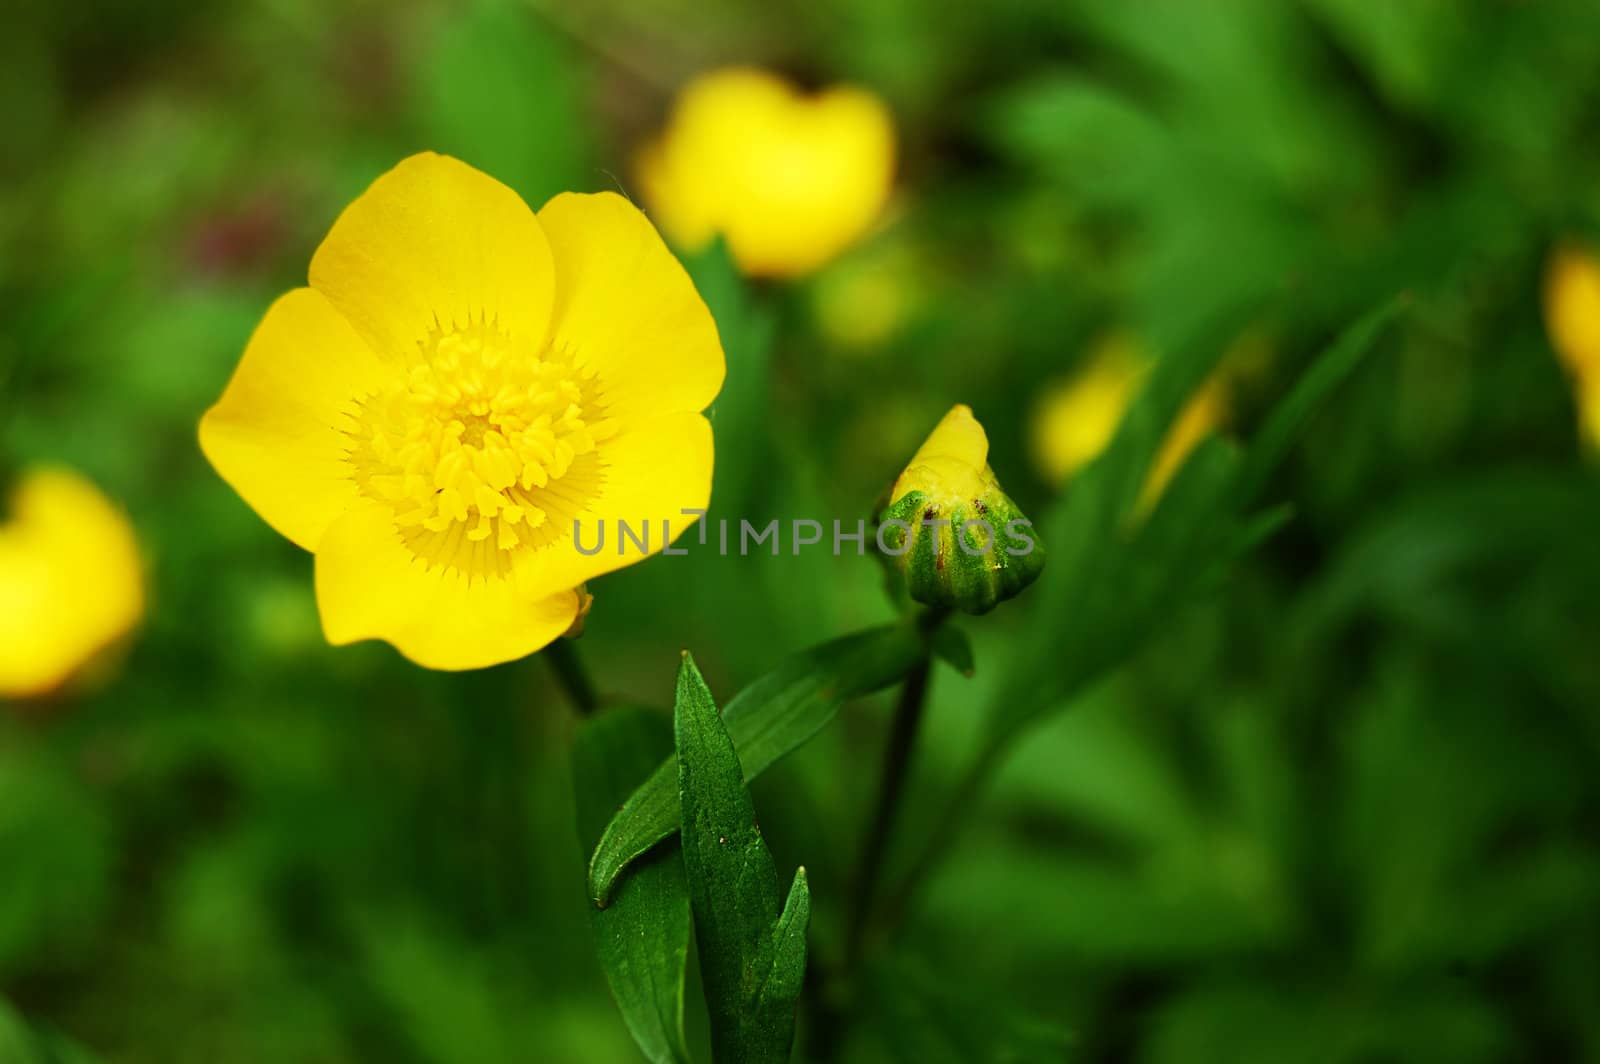 Yellow buttercup over green grass